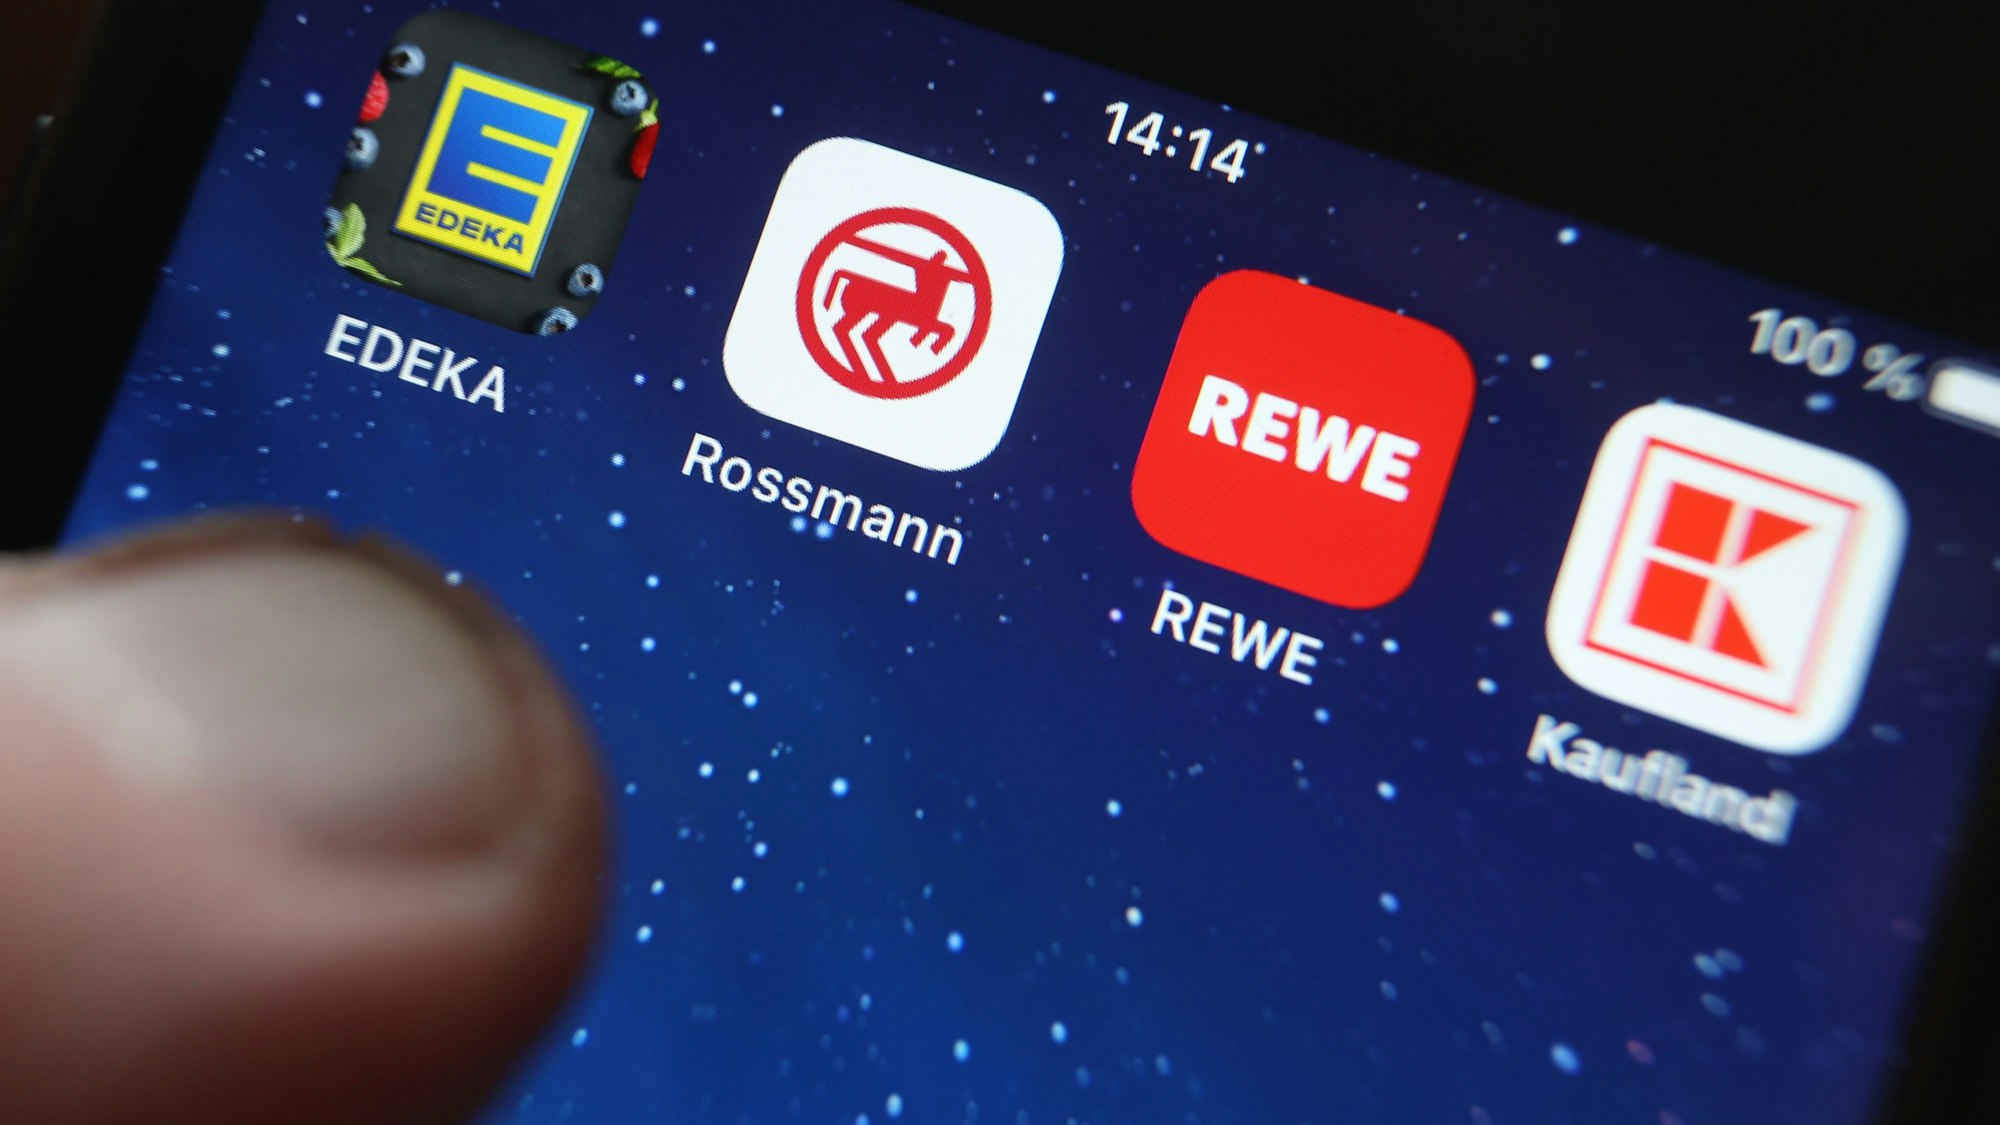 Icons der Apps von den Handelsketten Edeka, Rossmann, REWE und Kaufland sind auf dem Display eines iPhones zu sehen.